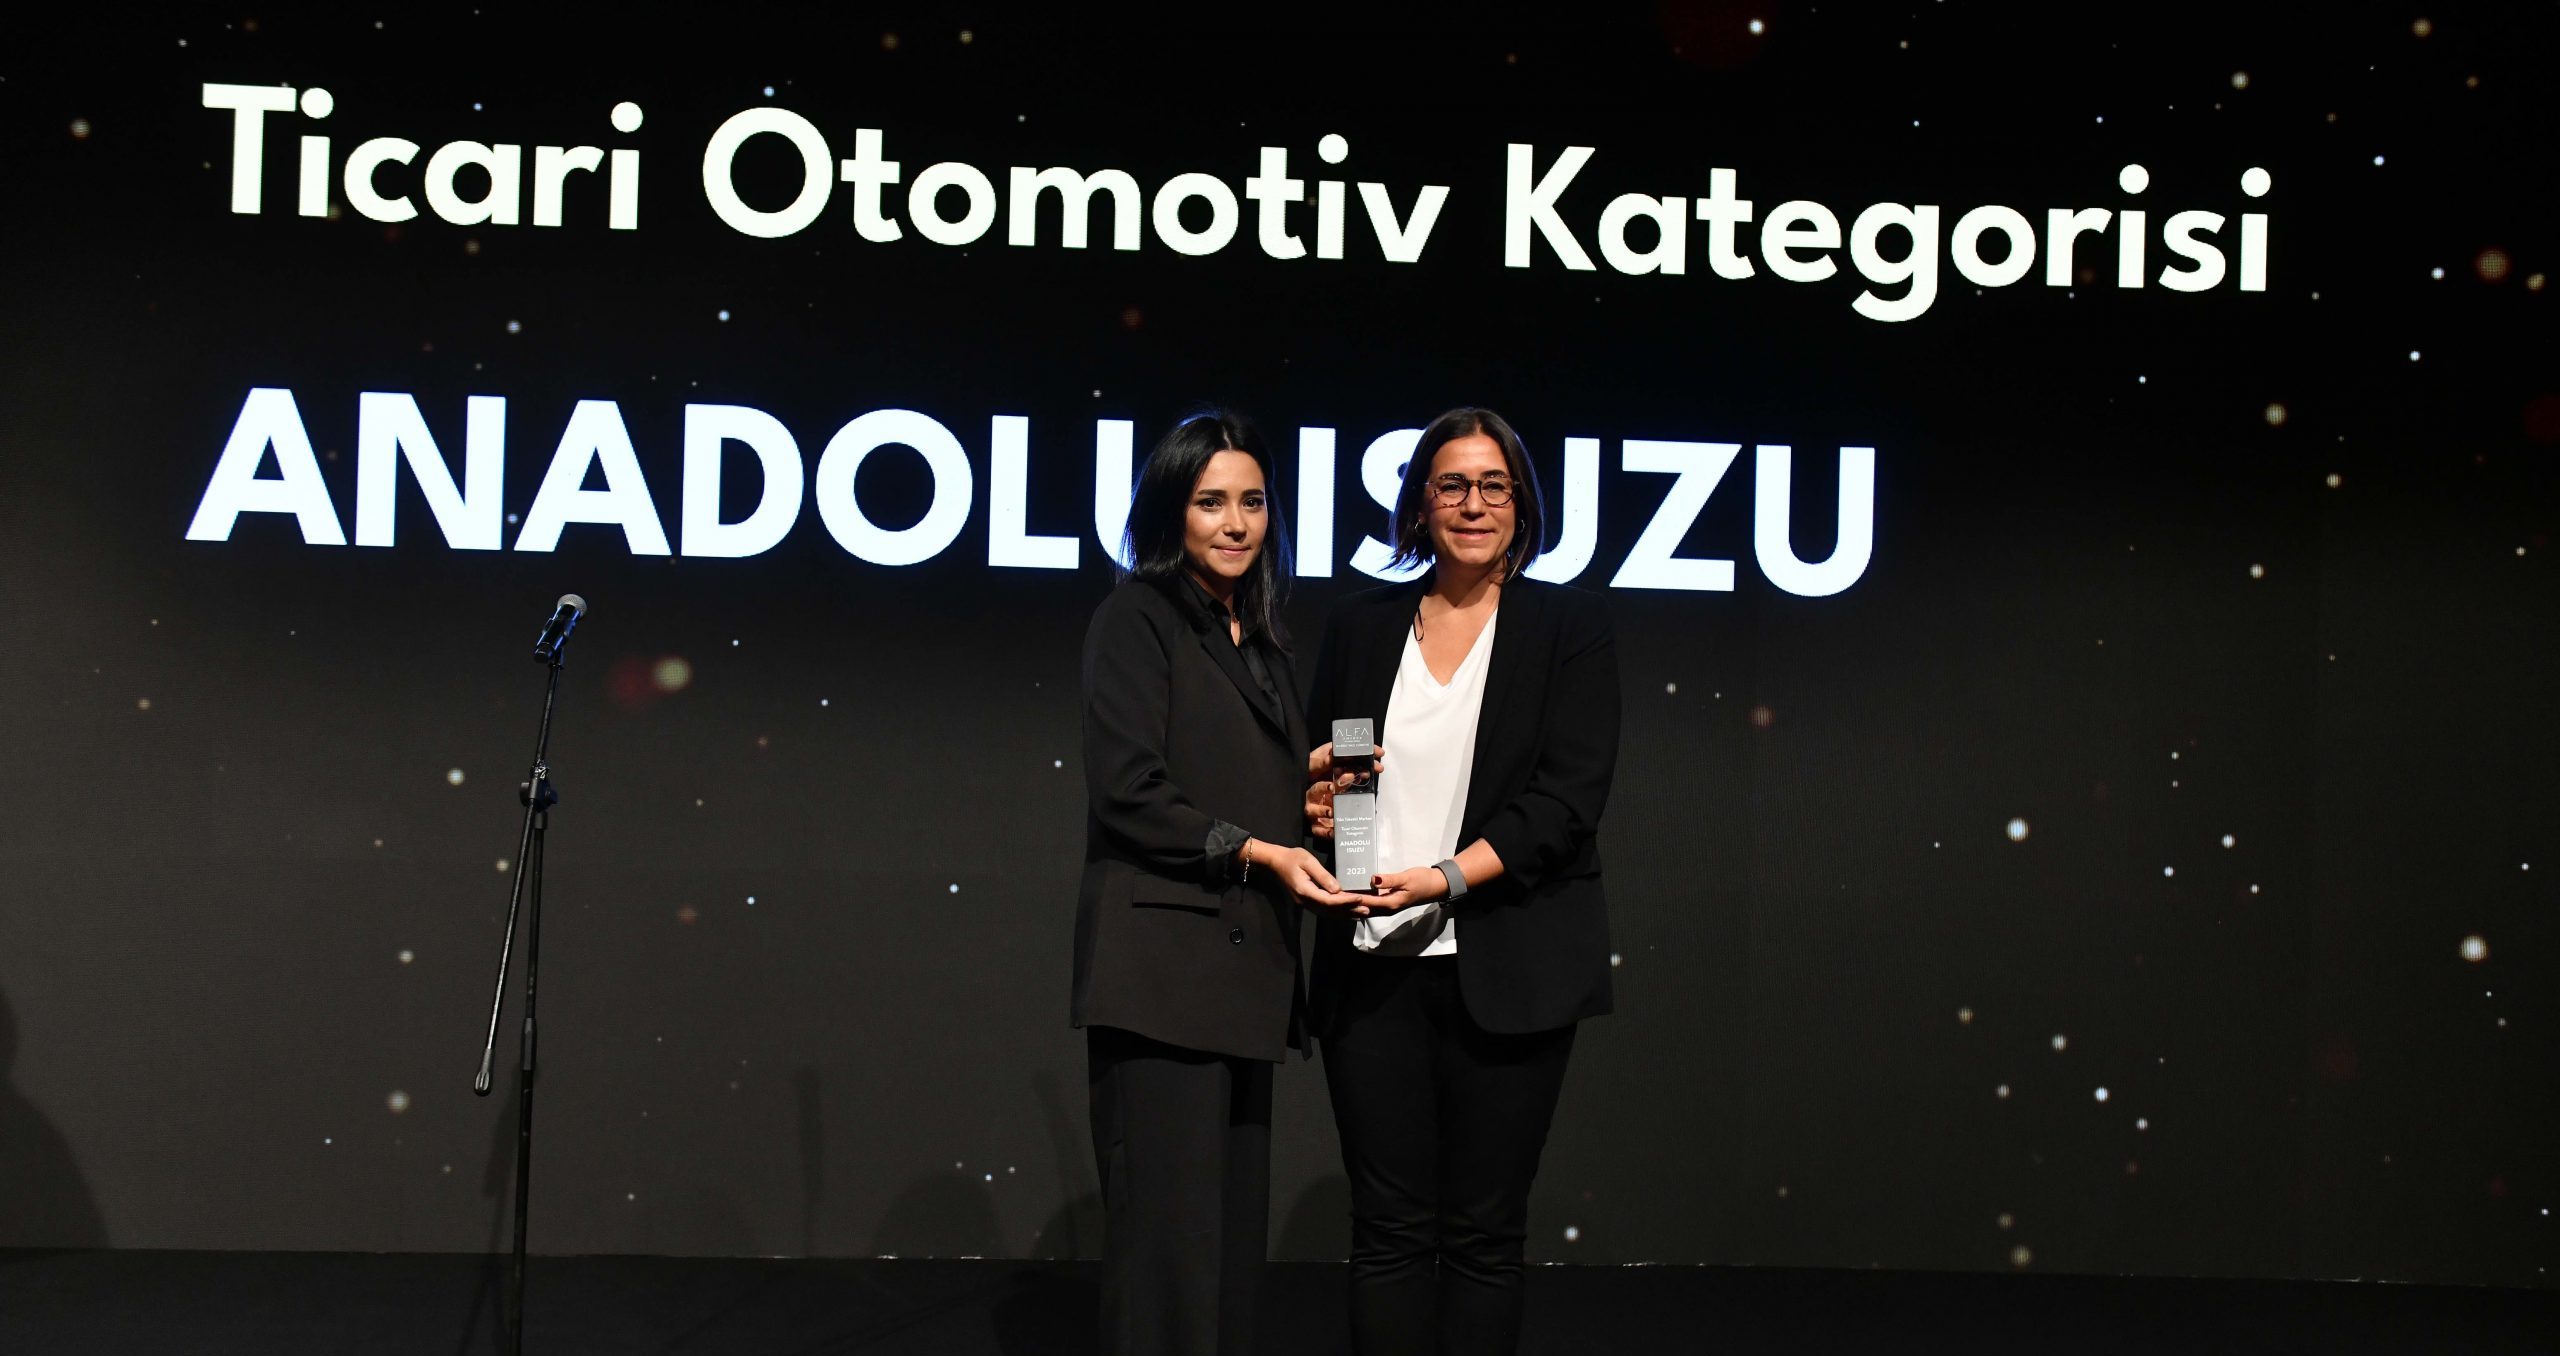 Anadolu Isuzu’ya bir kez daha Yılın Müşteri Markası Ödülü